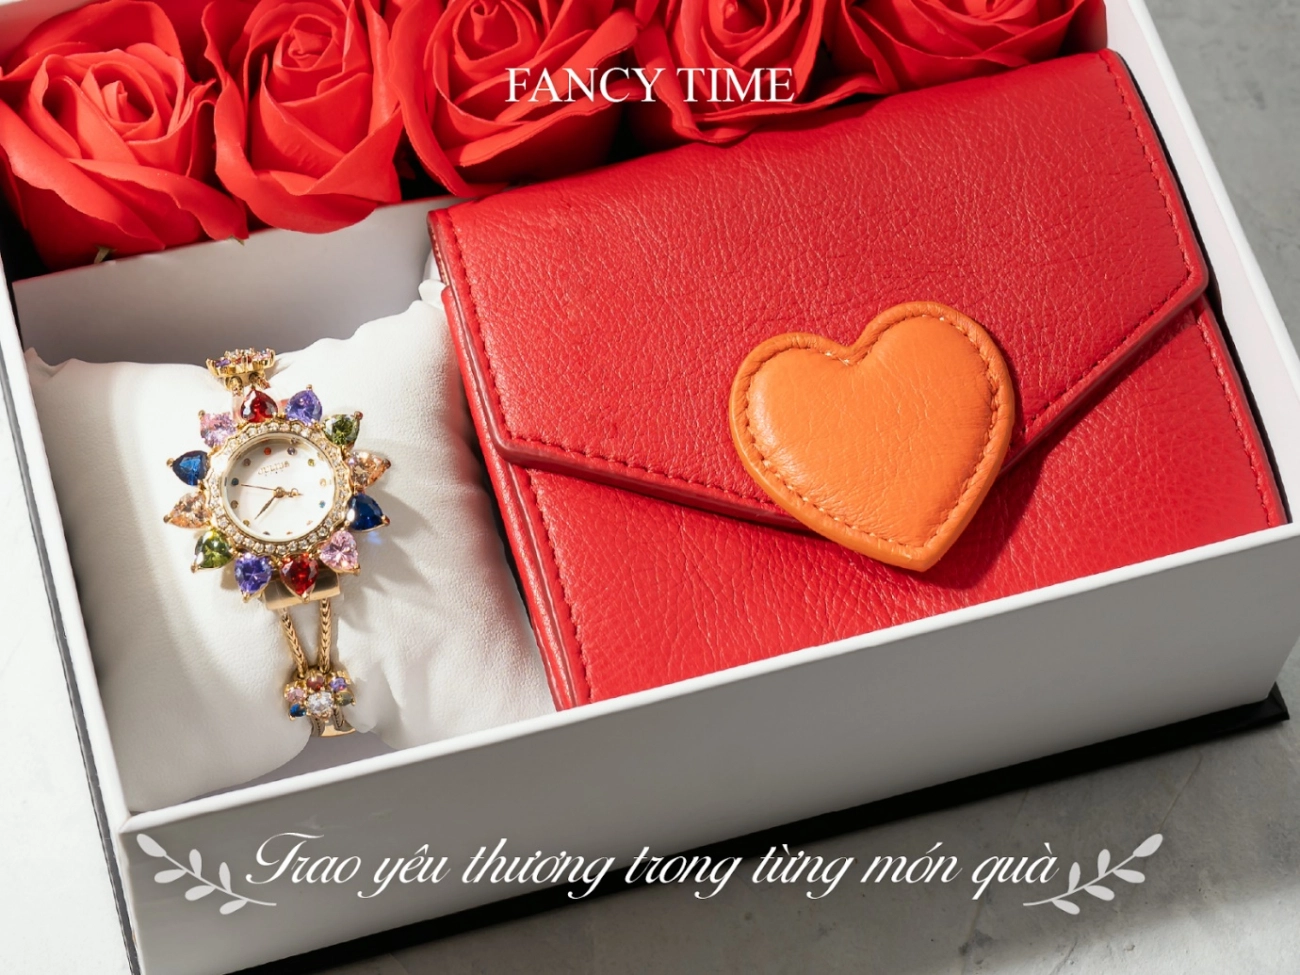 Fancy time - trao yêu thương trong từng món quà - 1